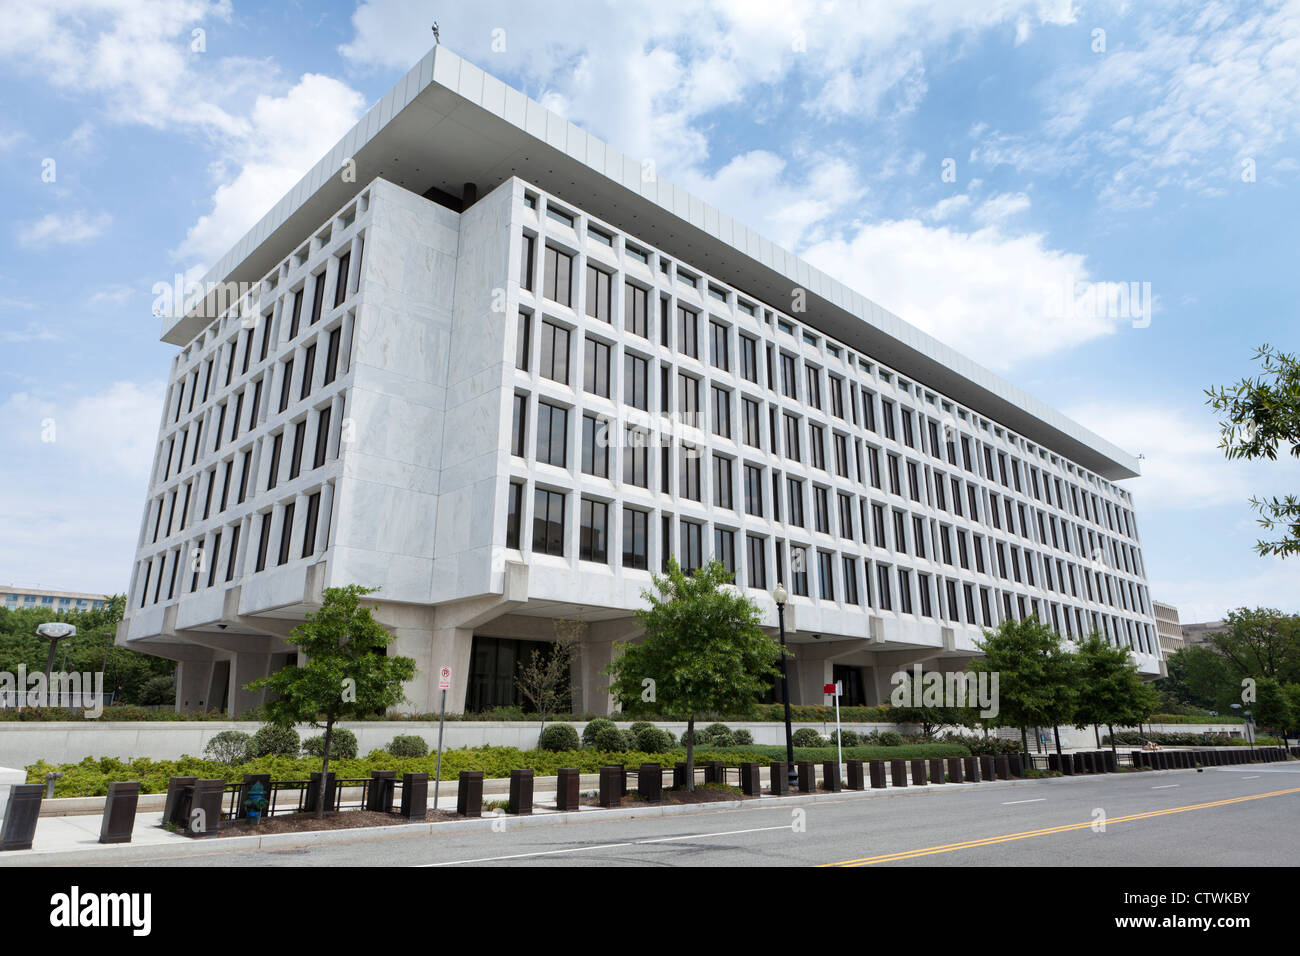 La Réserve fédérale Building, Washington, DC Banque D'Images